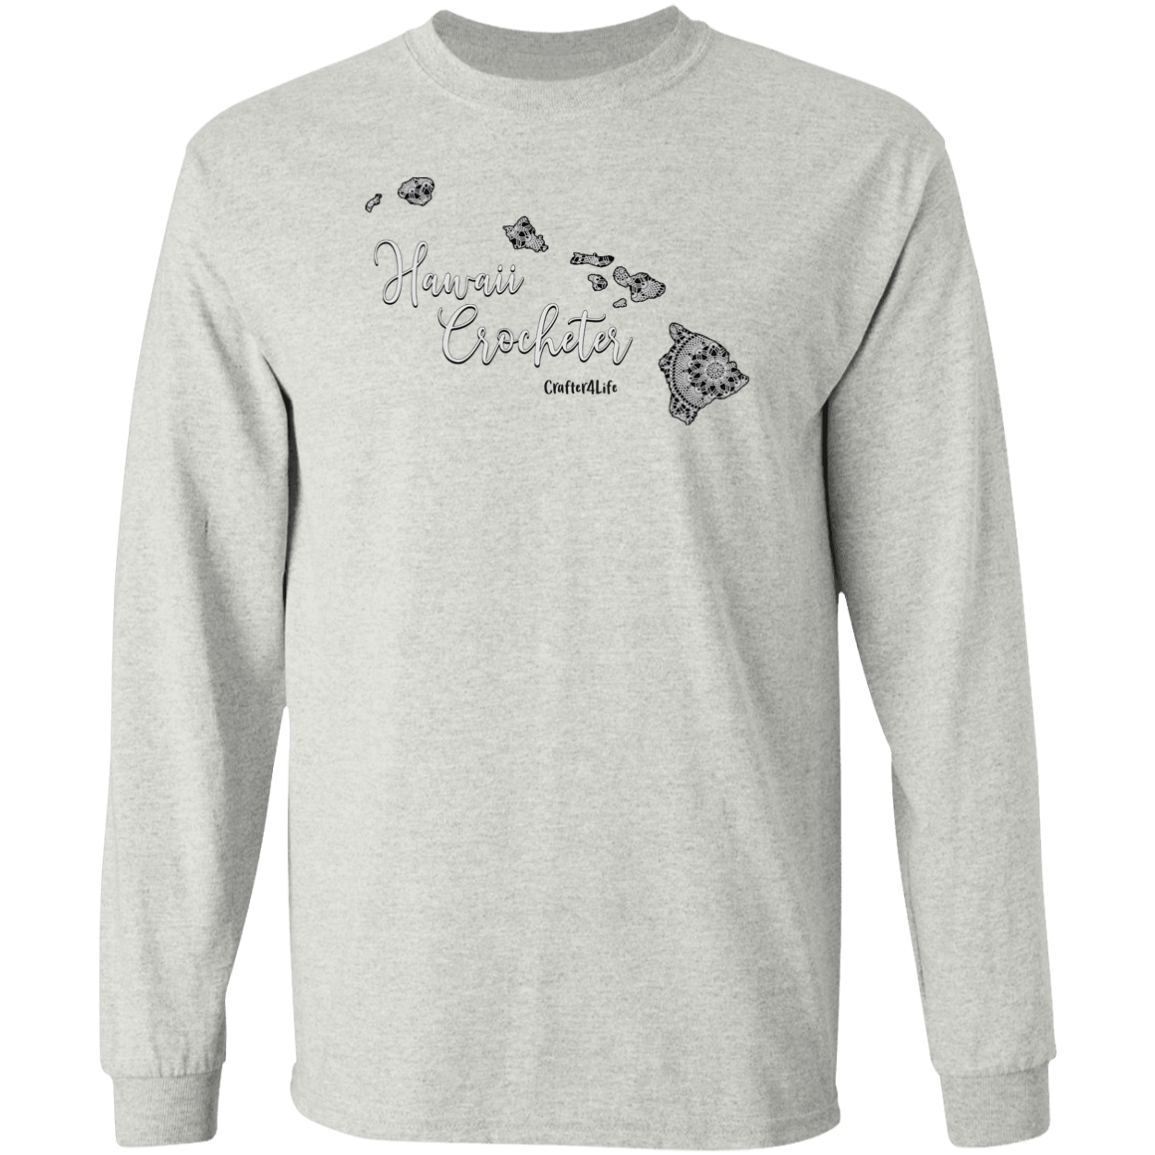 Hawaii Crocheter LS Ultra Cotton T-Shirt